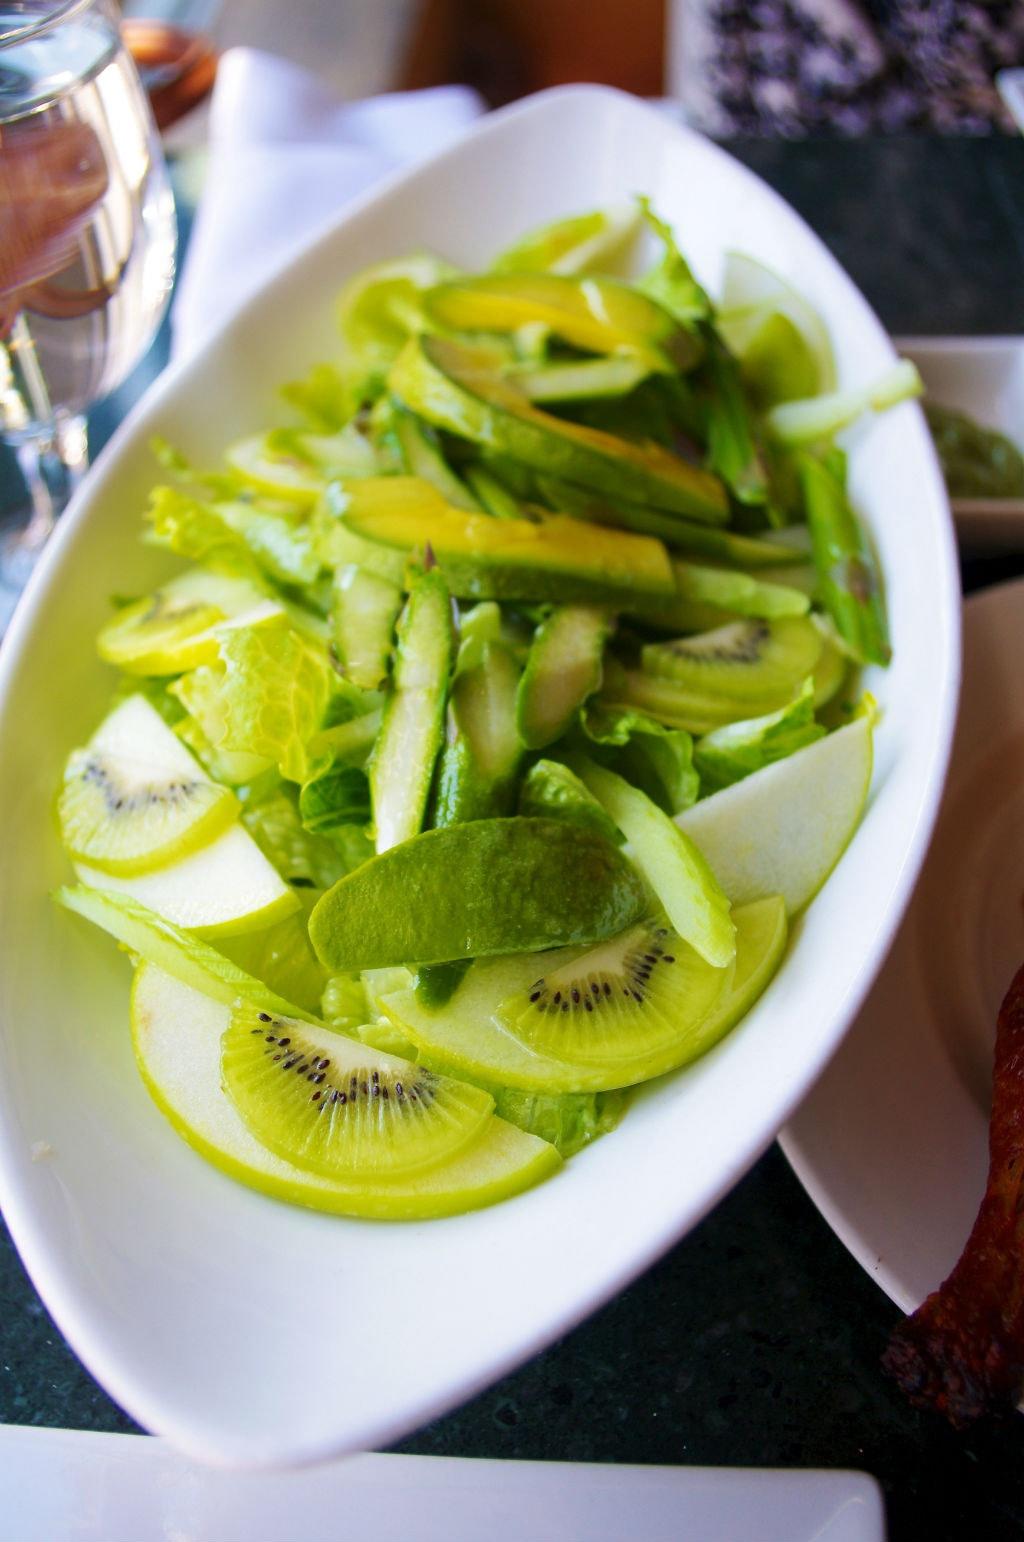 纯绿沙拉 (All green salad)的做法